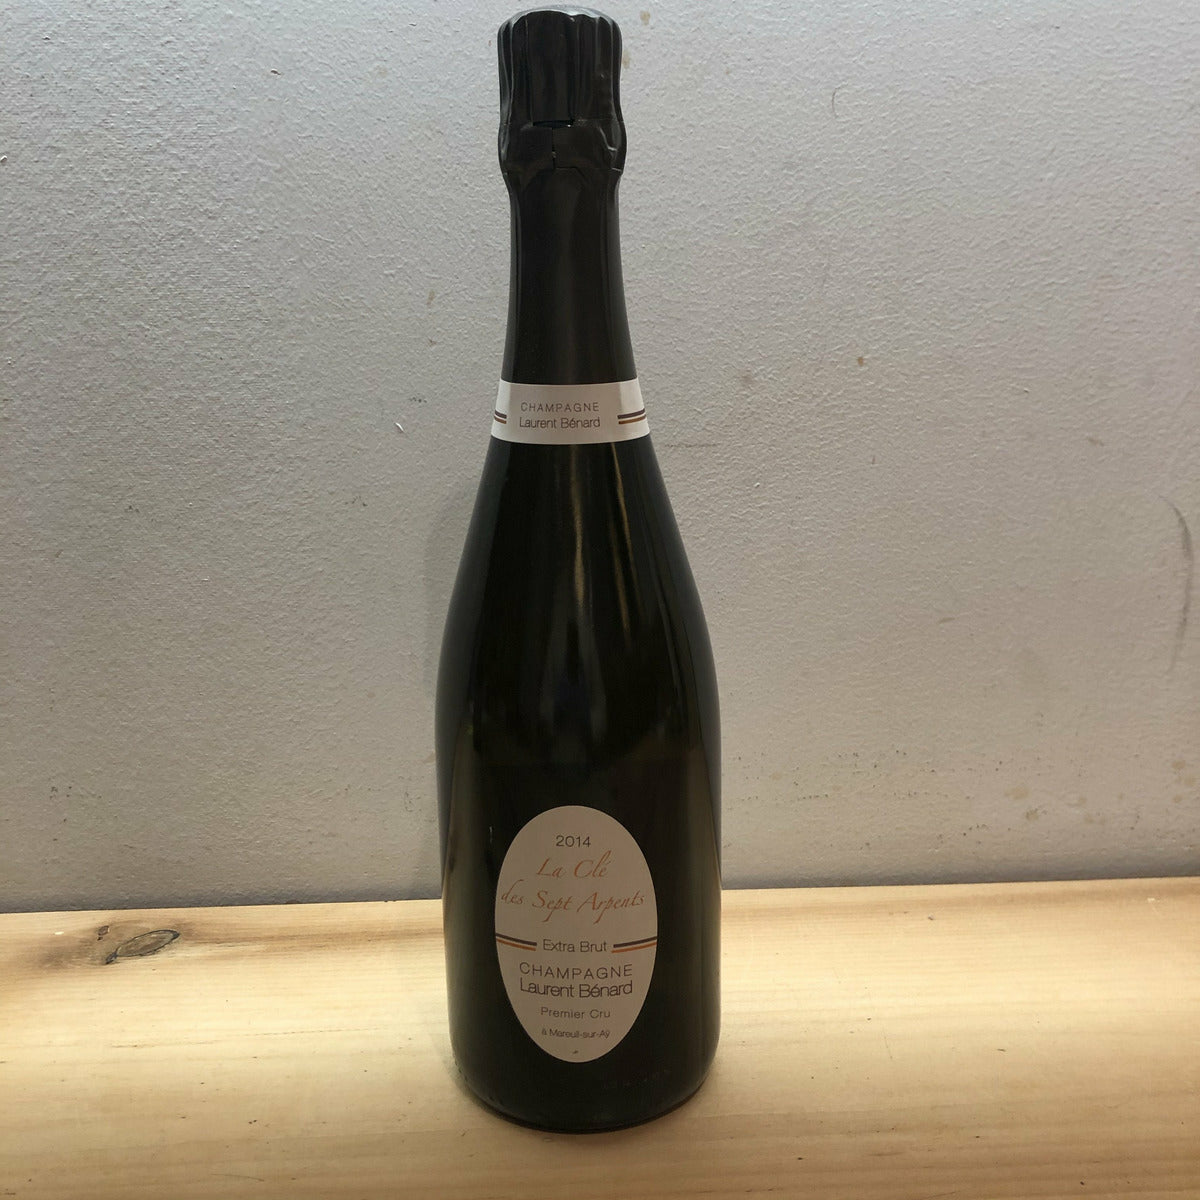 Champagne Laurent Benard, La Clef des 7 Arpents Extra Brut (1er Cru) NV